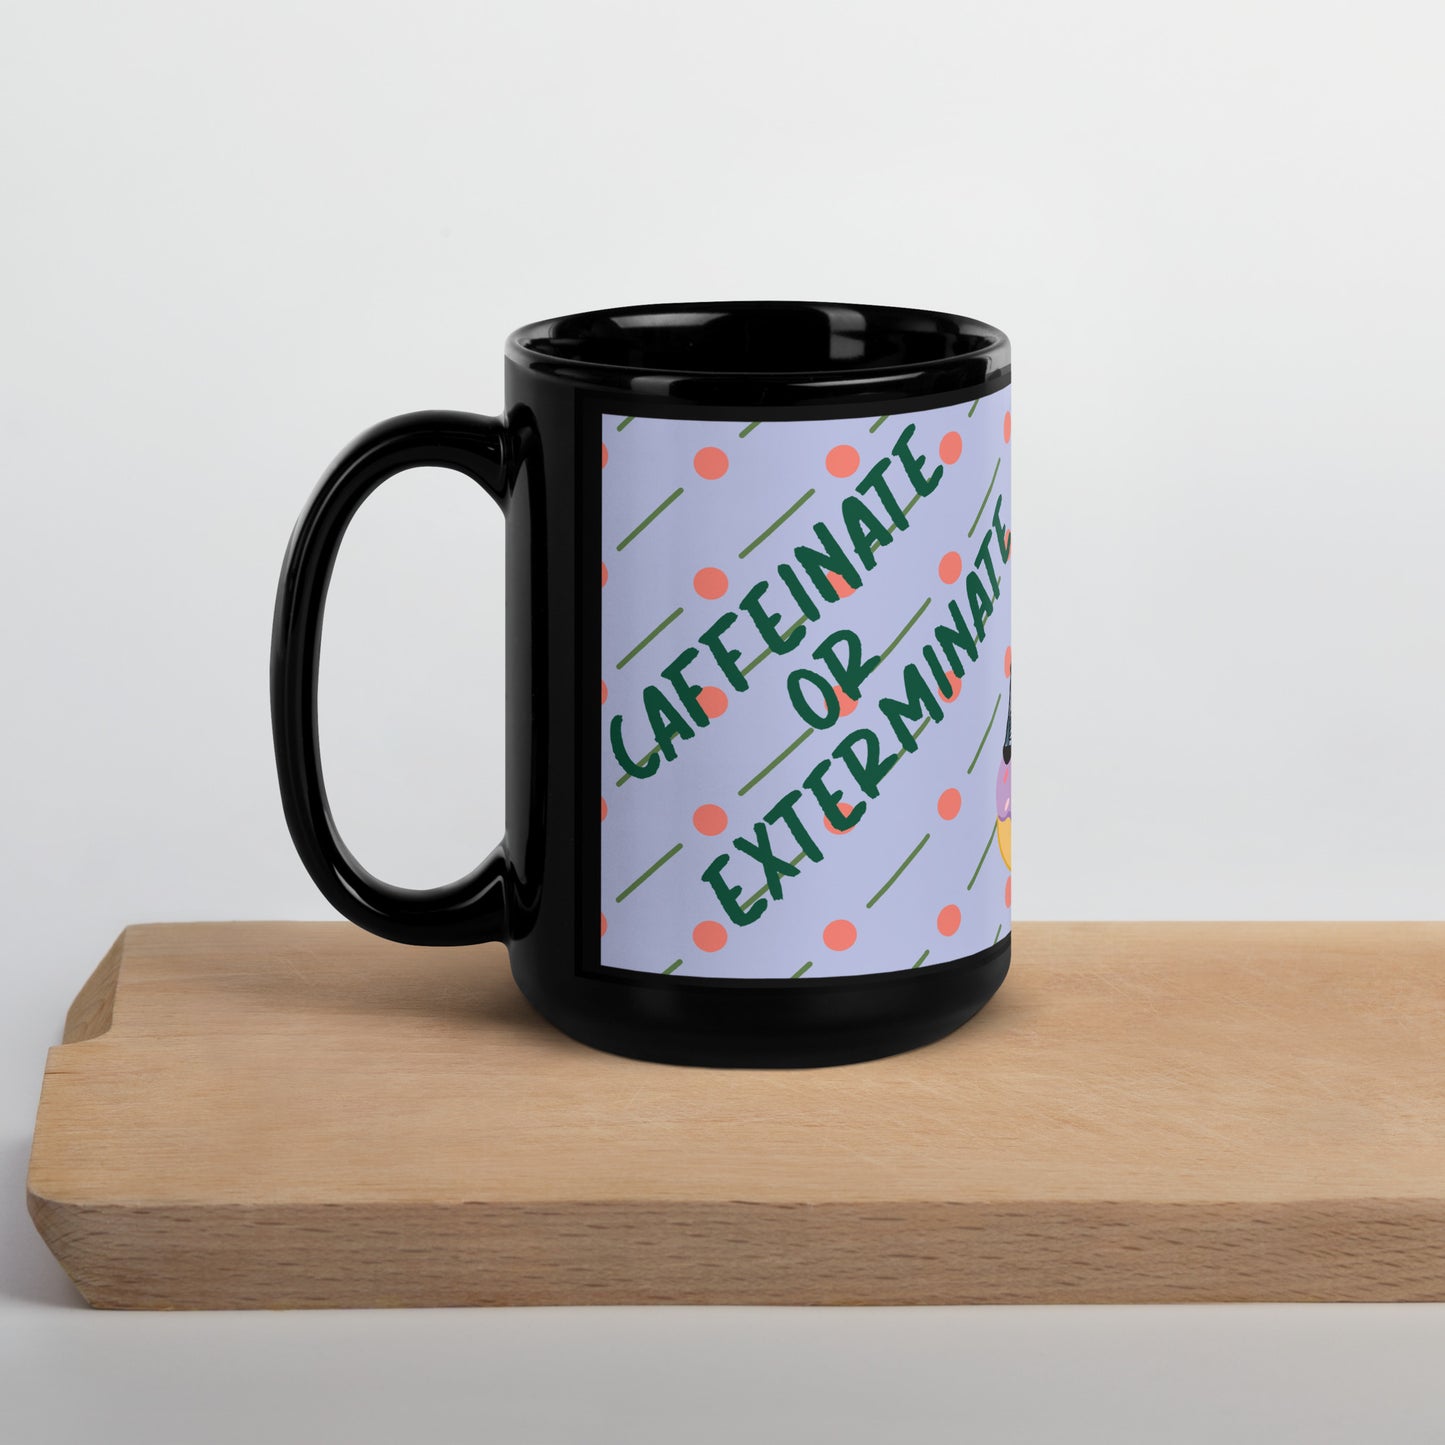 Caffeinate or Exterminate Mug